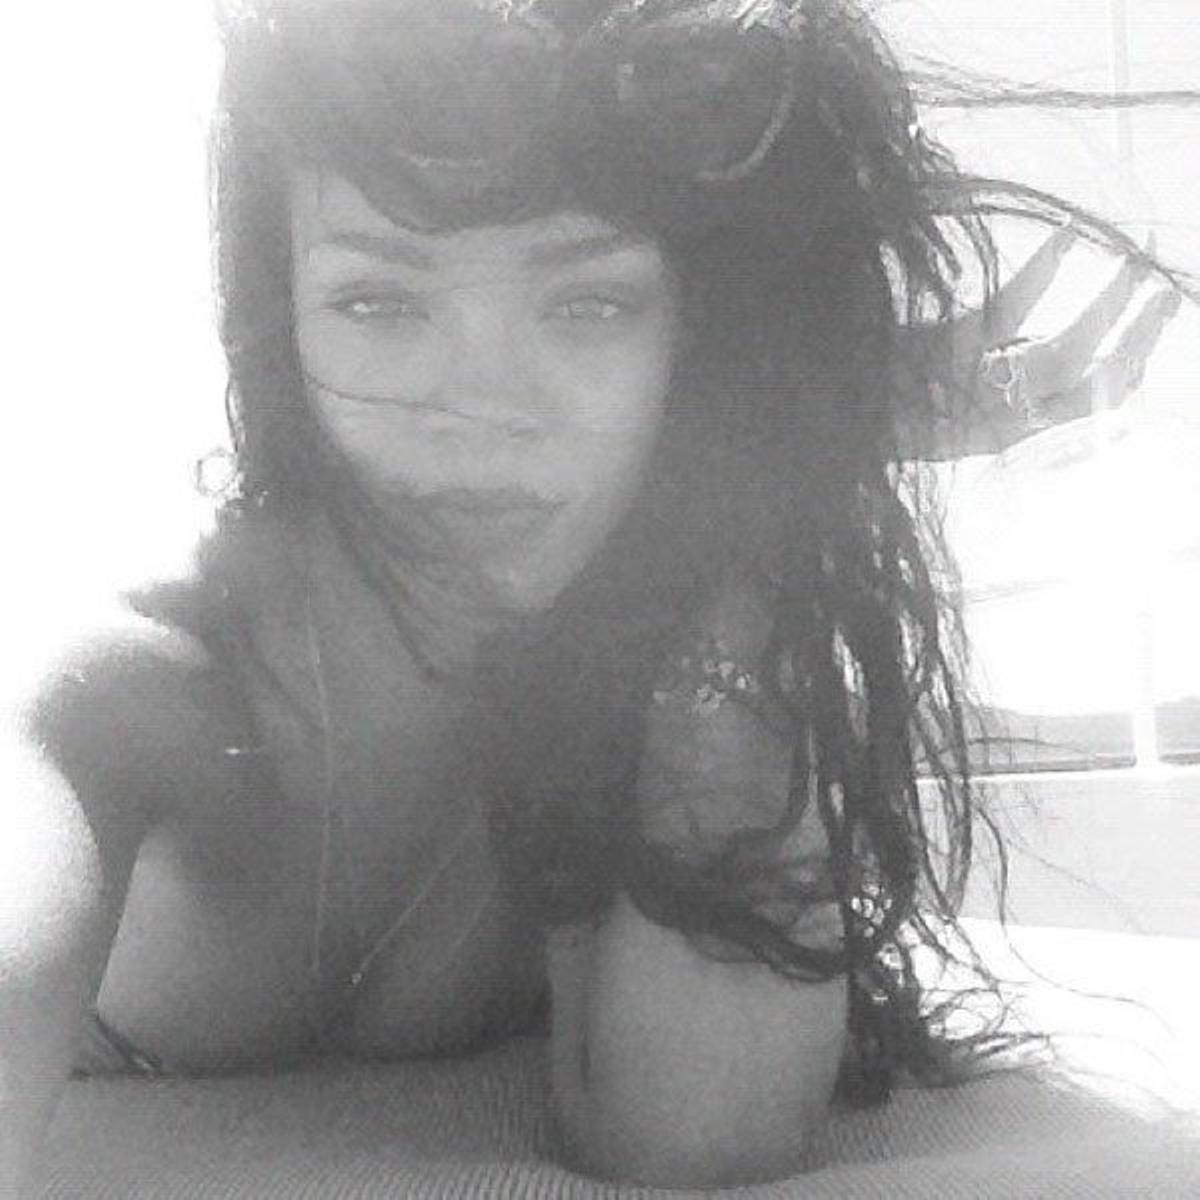 Rihanna-9